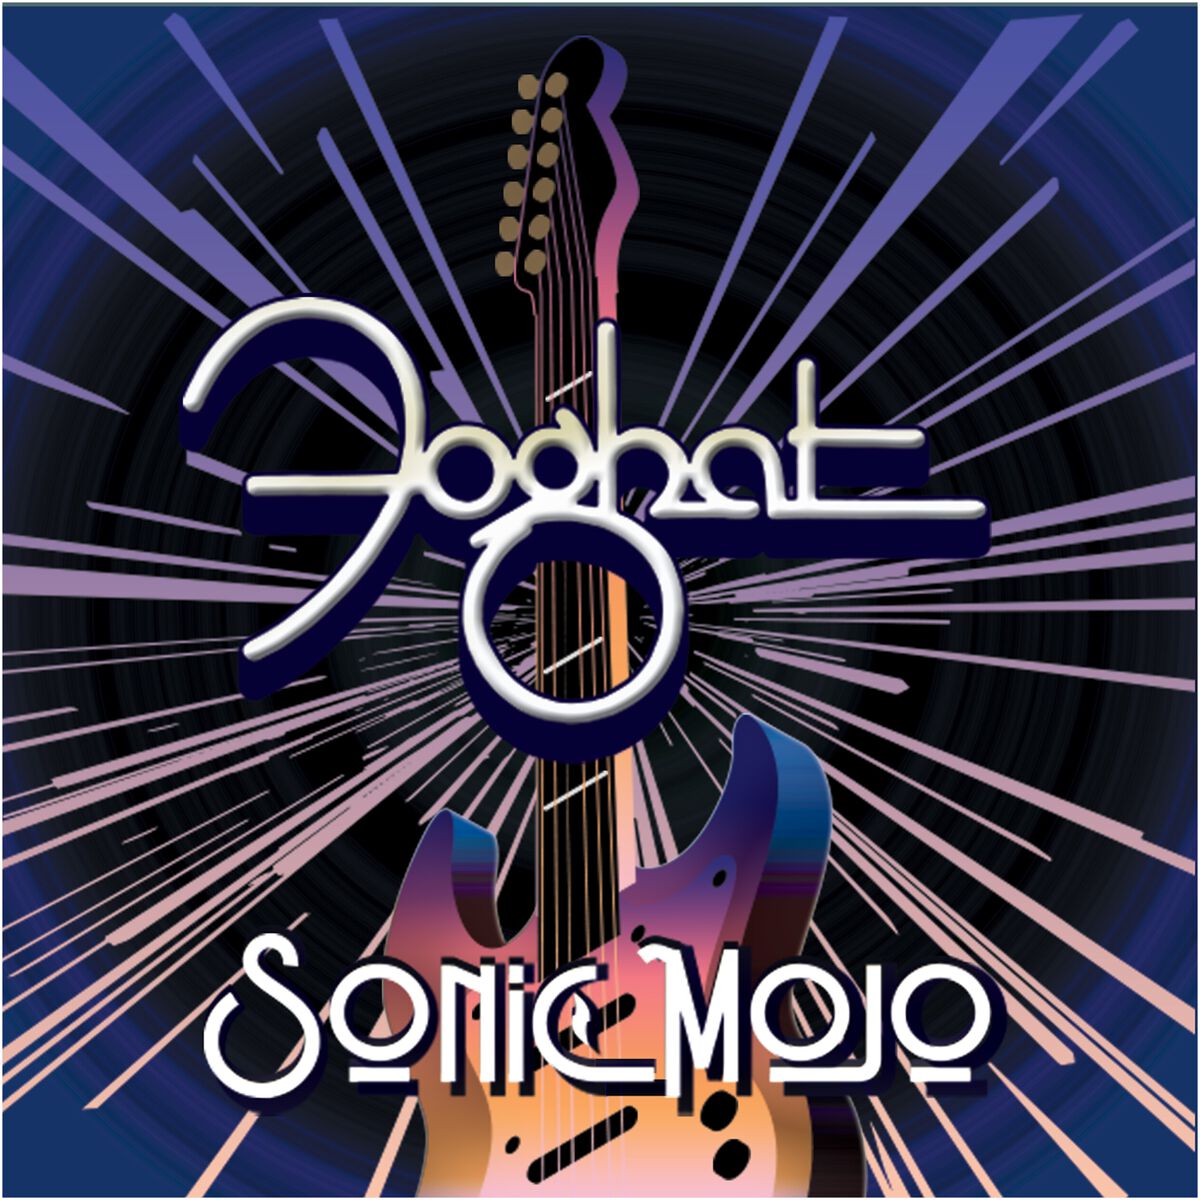 Foghat Sonic Mojo CD multicolor